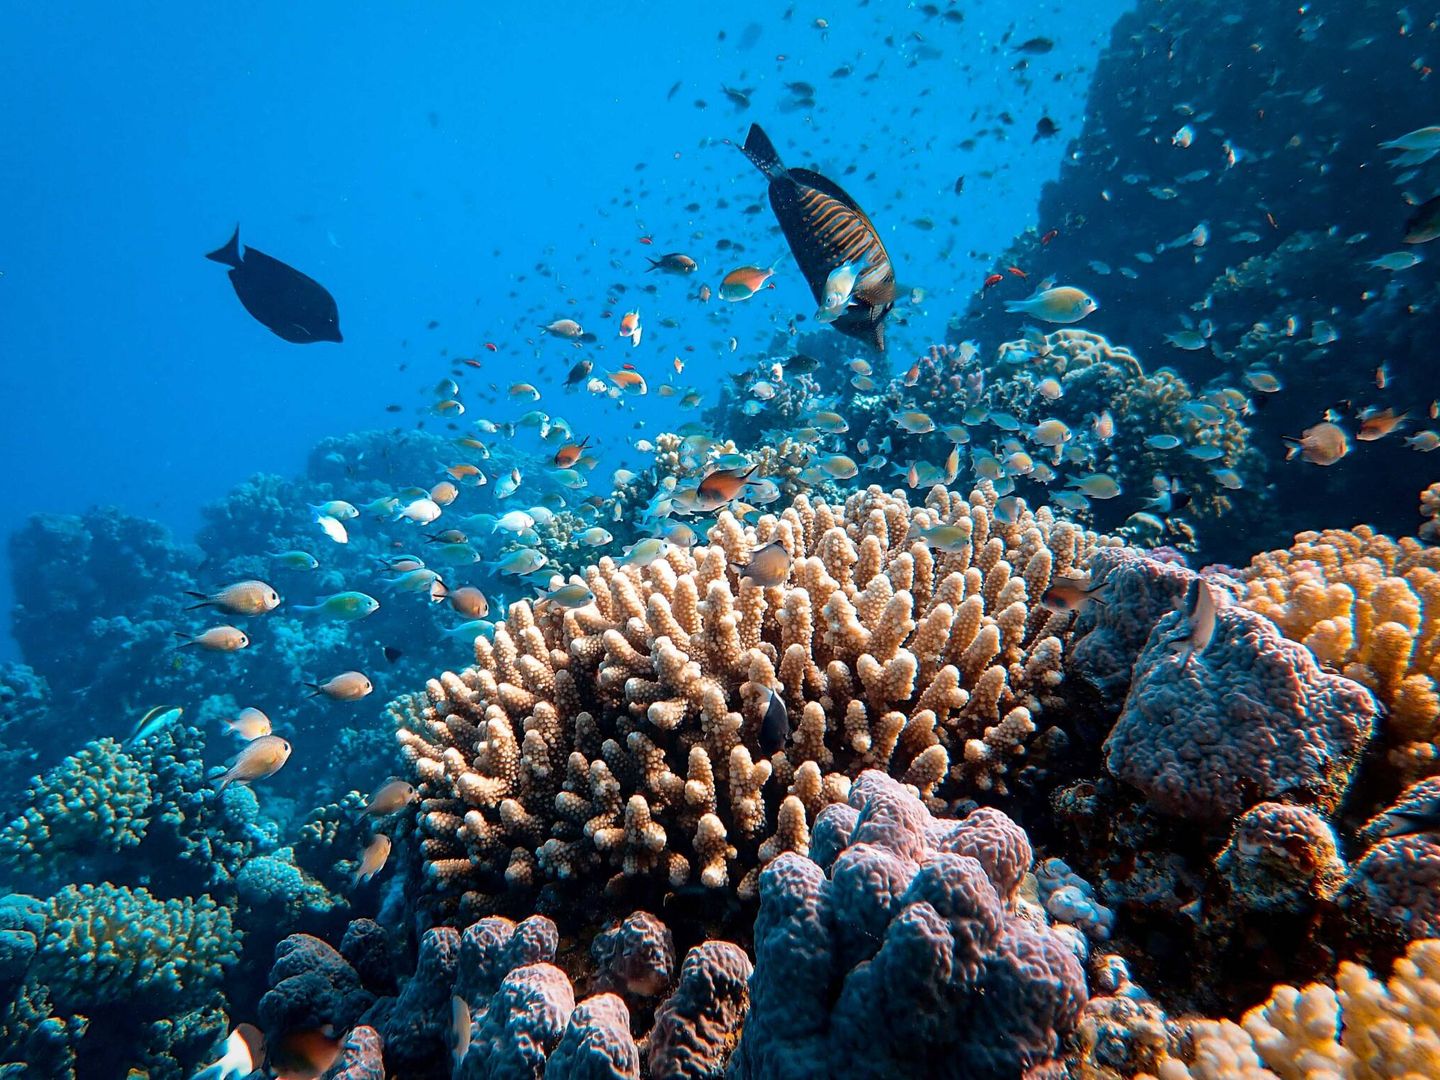 La conservación de la biodiversidad marina australiana pasa por conservar la Gran Barrera de Coral. Unsplash